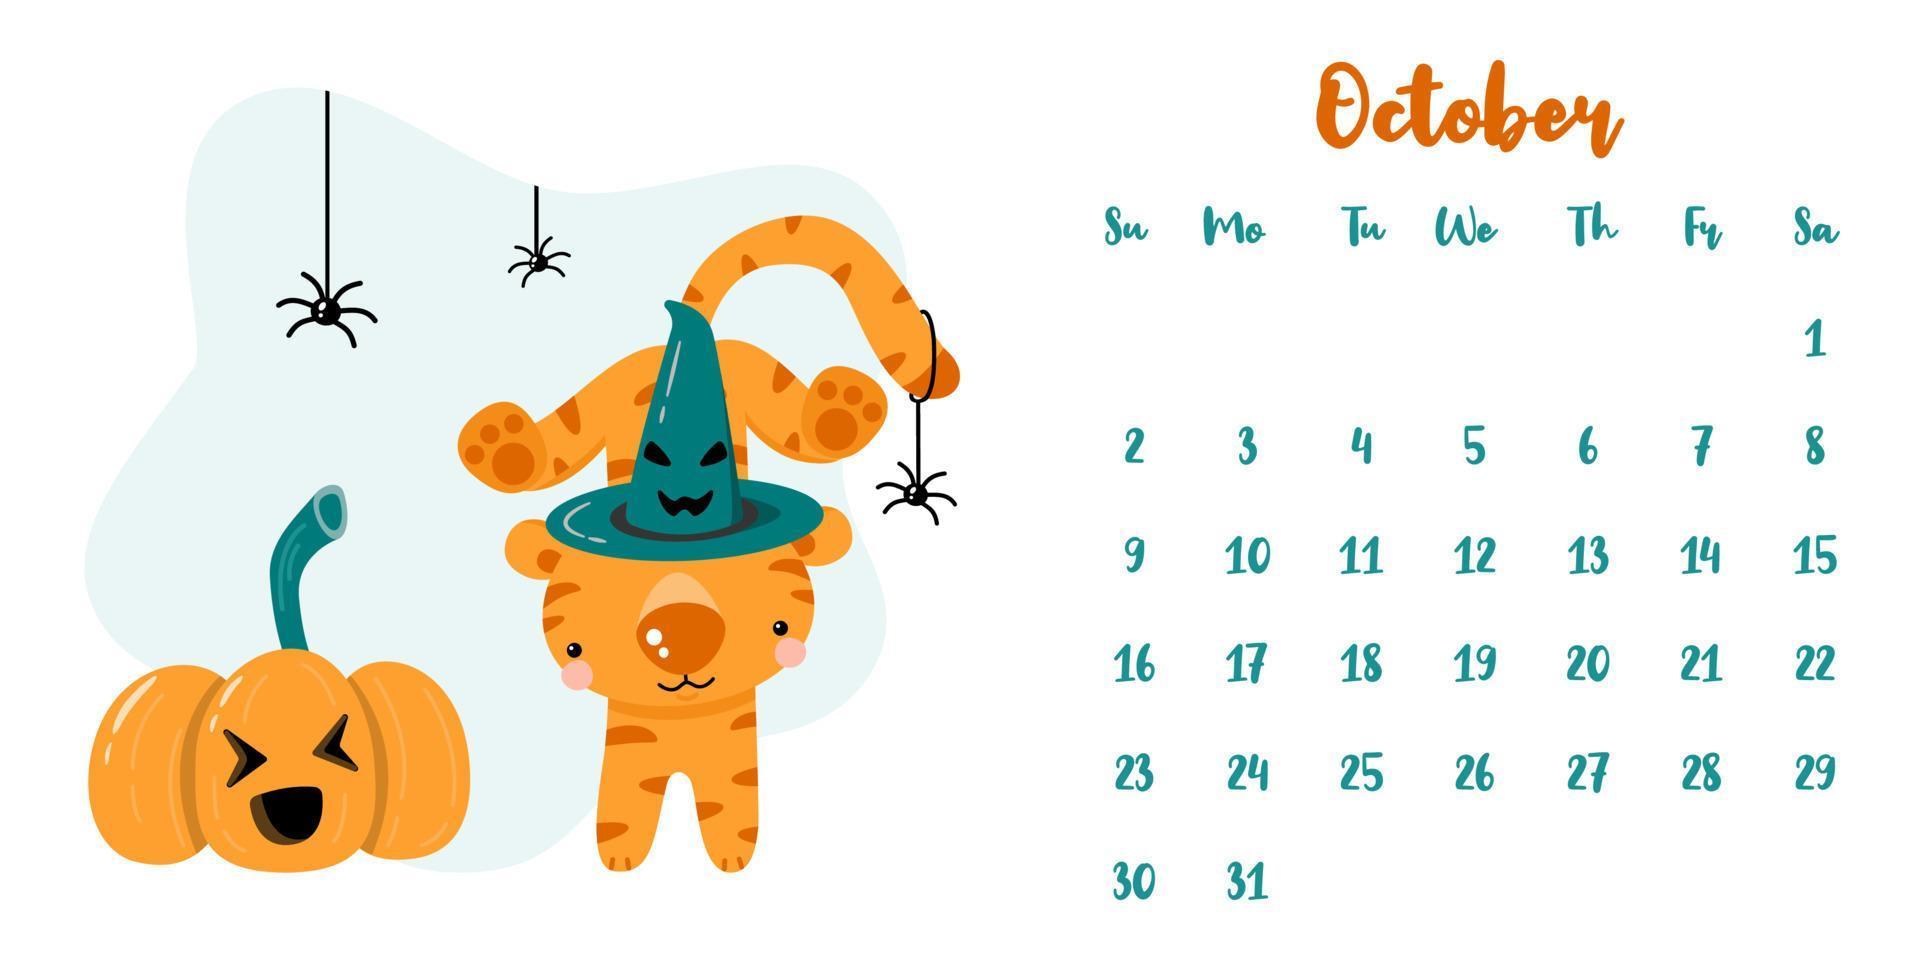 kalender voor oktober 2022 met schattige cartoontijger en halloween-pompoen vector